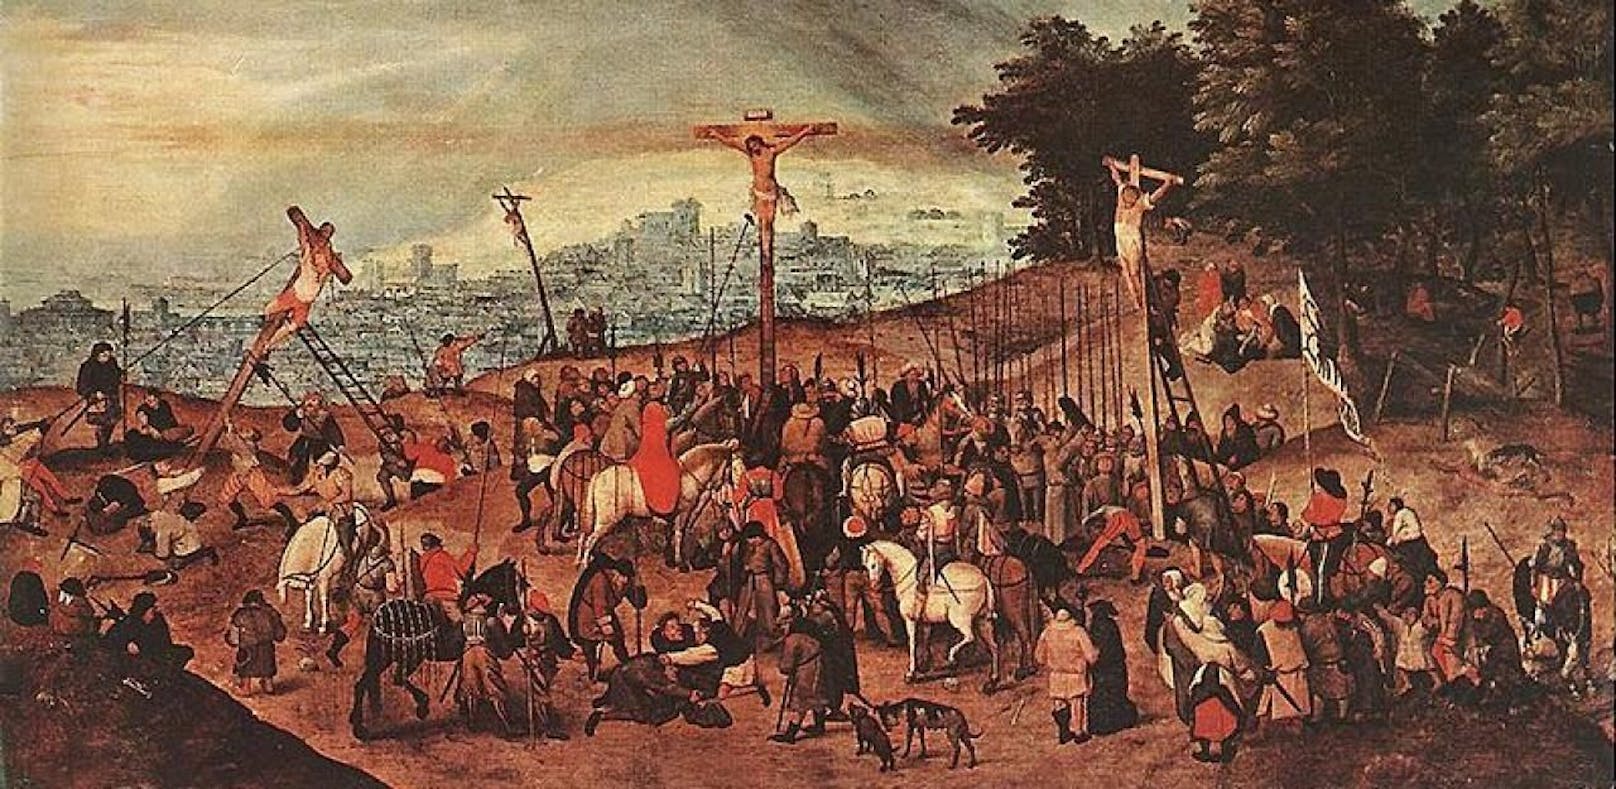 Die Kreuzigung von Pieter Brueghel dem Jüngeren